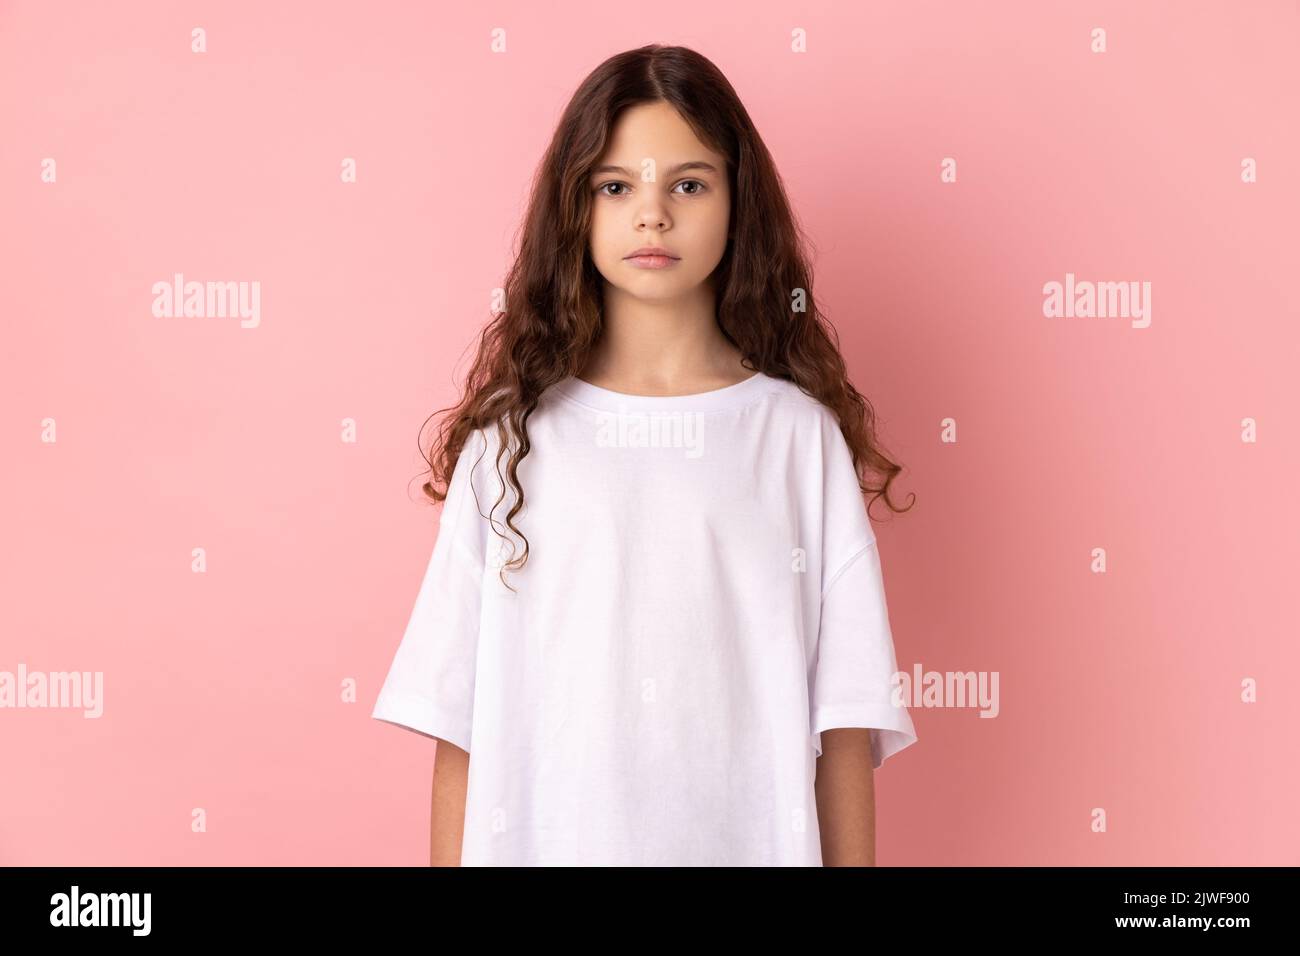 Porträt eines ernsthaften strengen kleinen Mädchens, das weißes T-Shirt trägt und die Kamera mit bossiger Ausdruckskraft anschaut, in schlechter Laune. Innenaufnahme des Studios isoliert auf rosa Hintergrund. Stockfoto